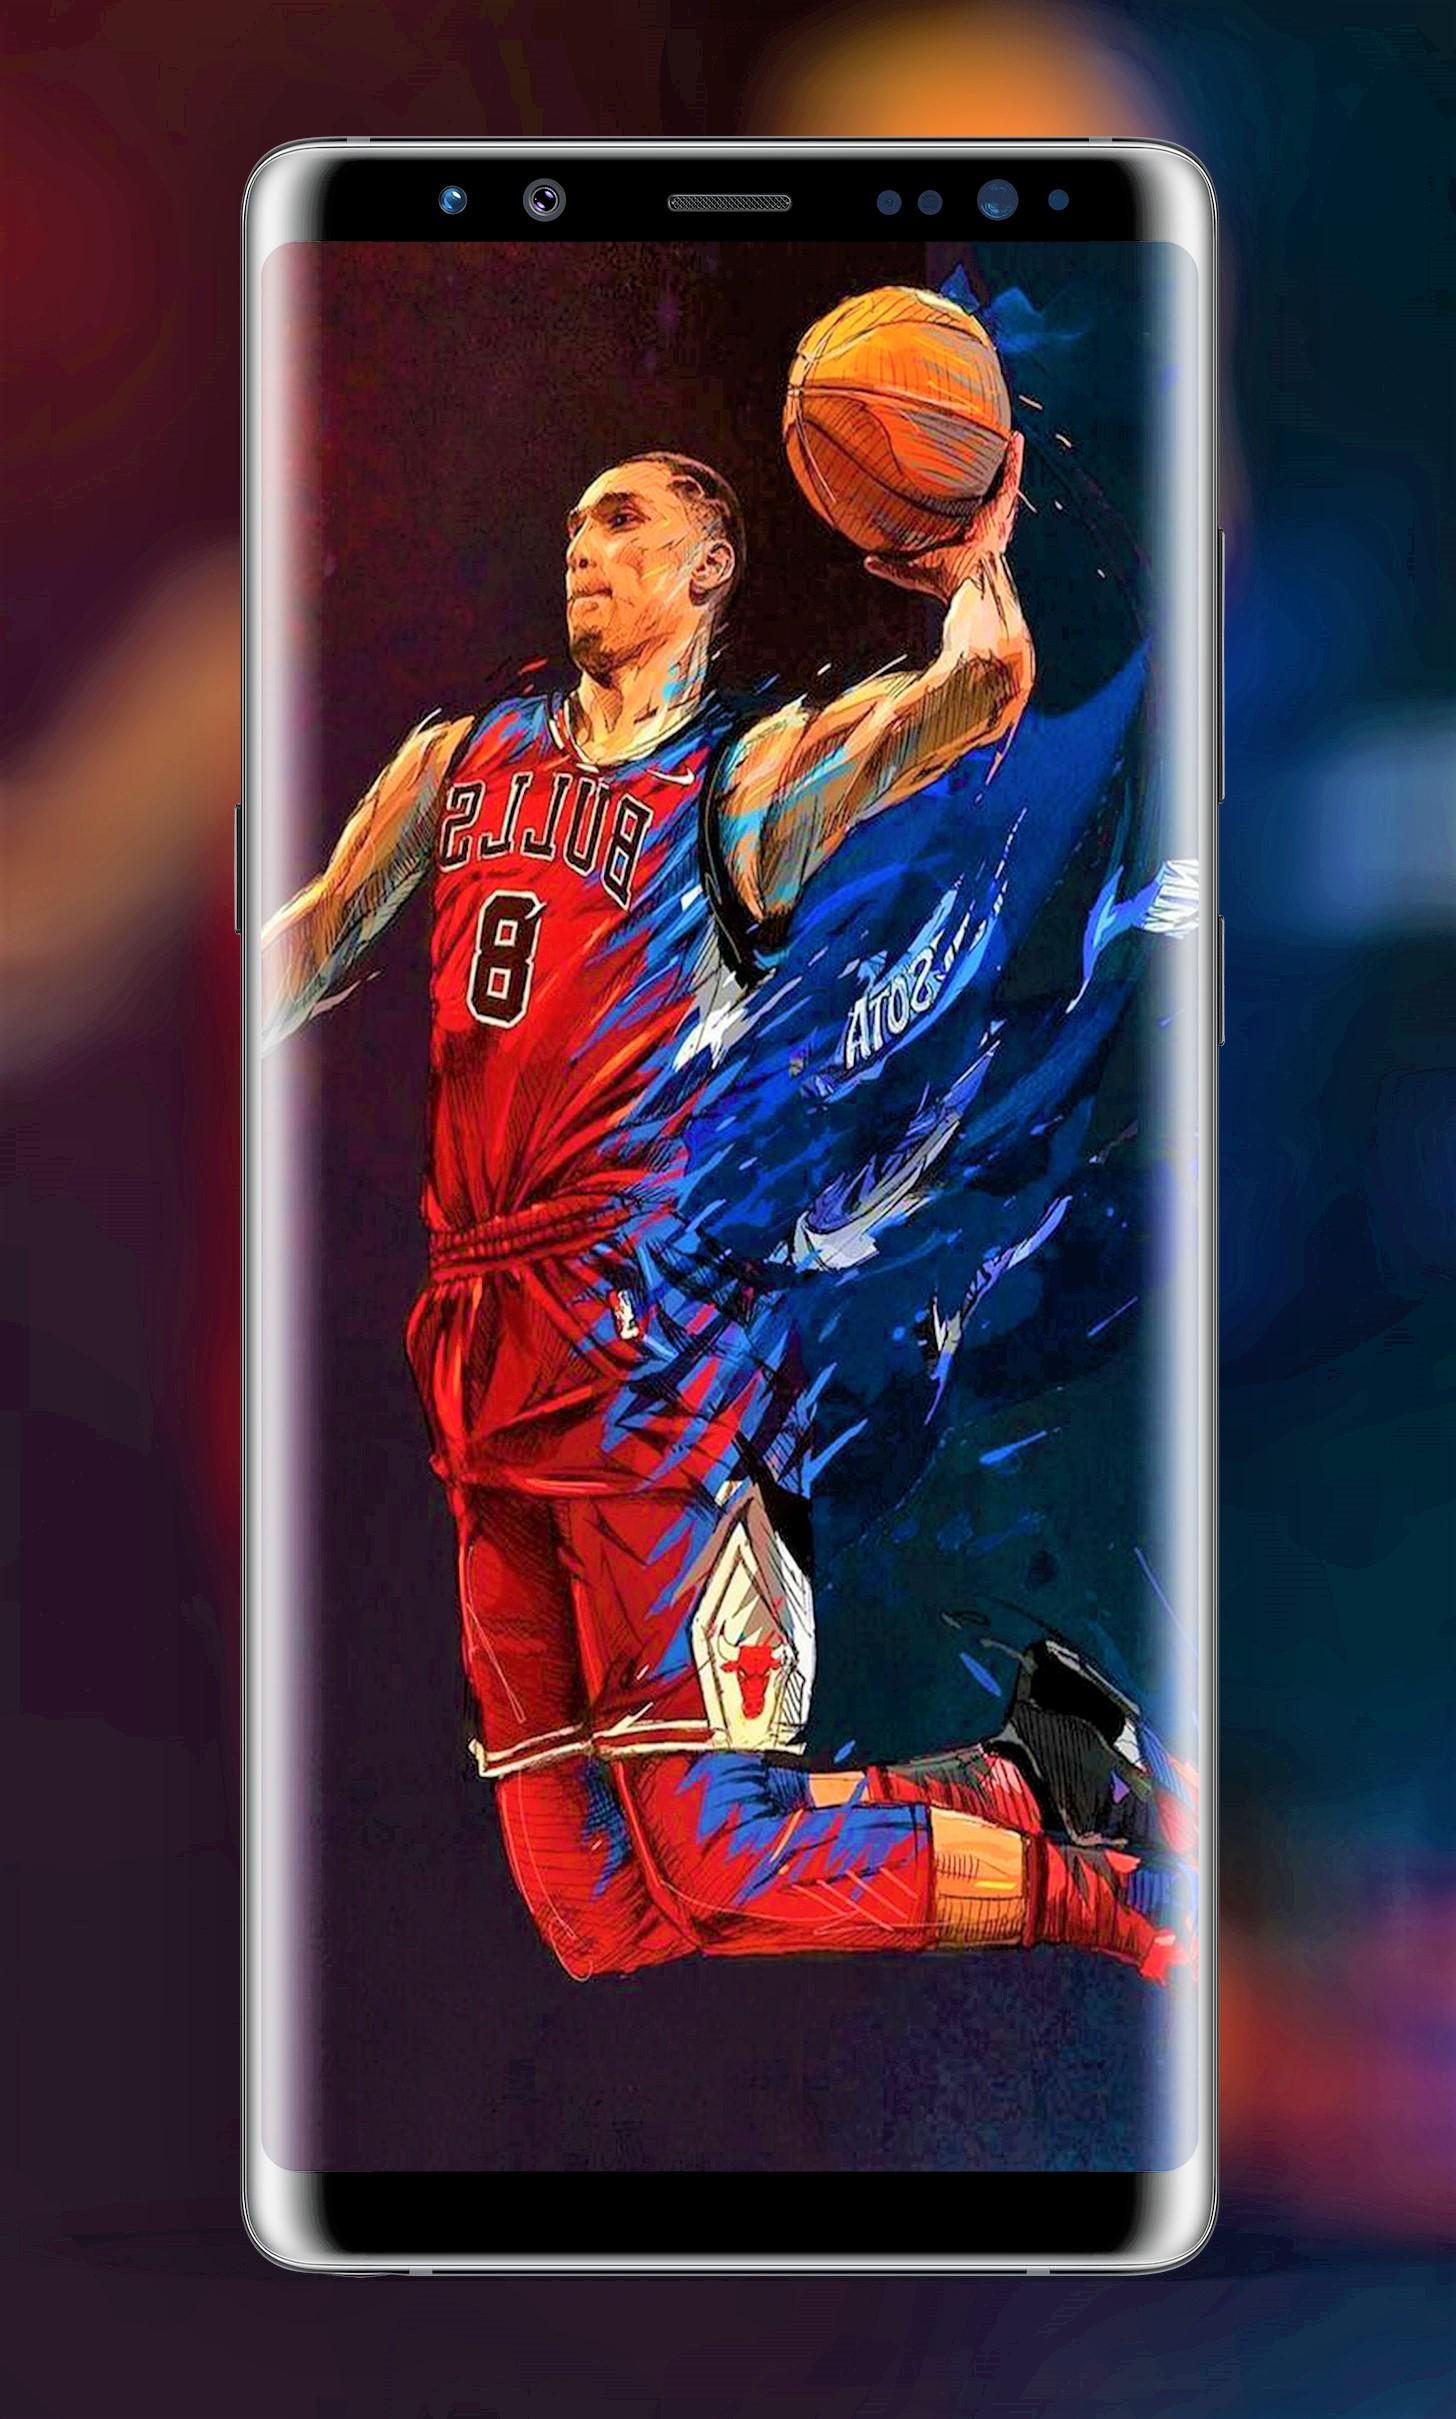 Descarga de APK de NBA wallpapers para Android